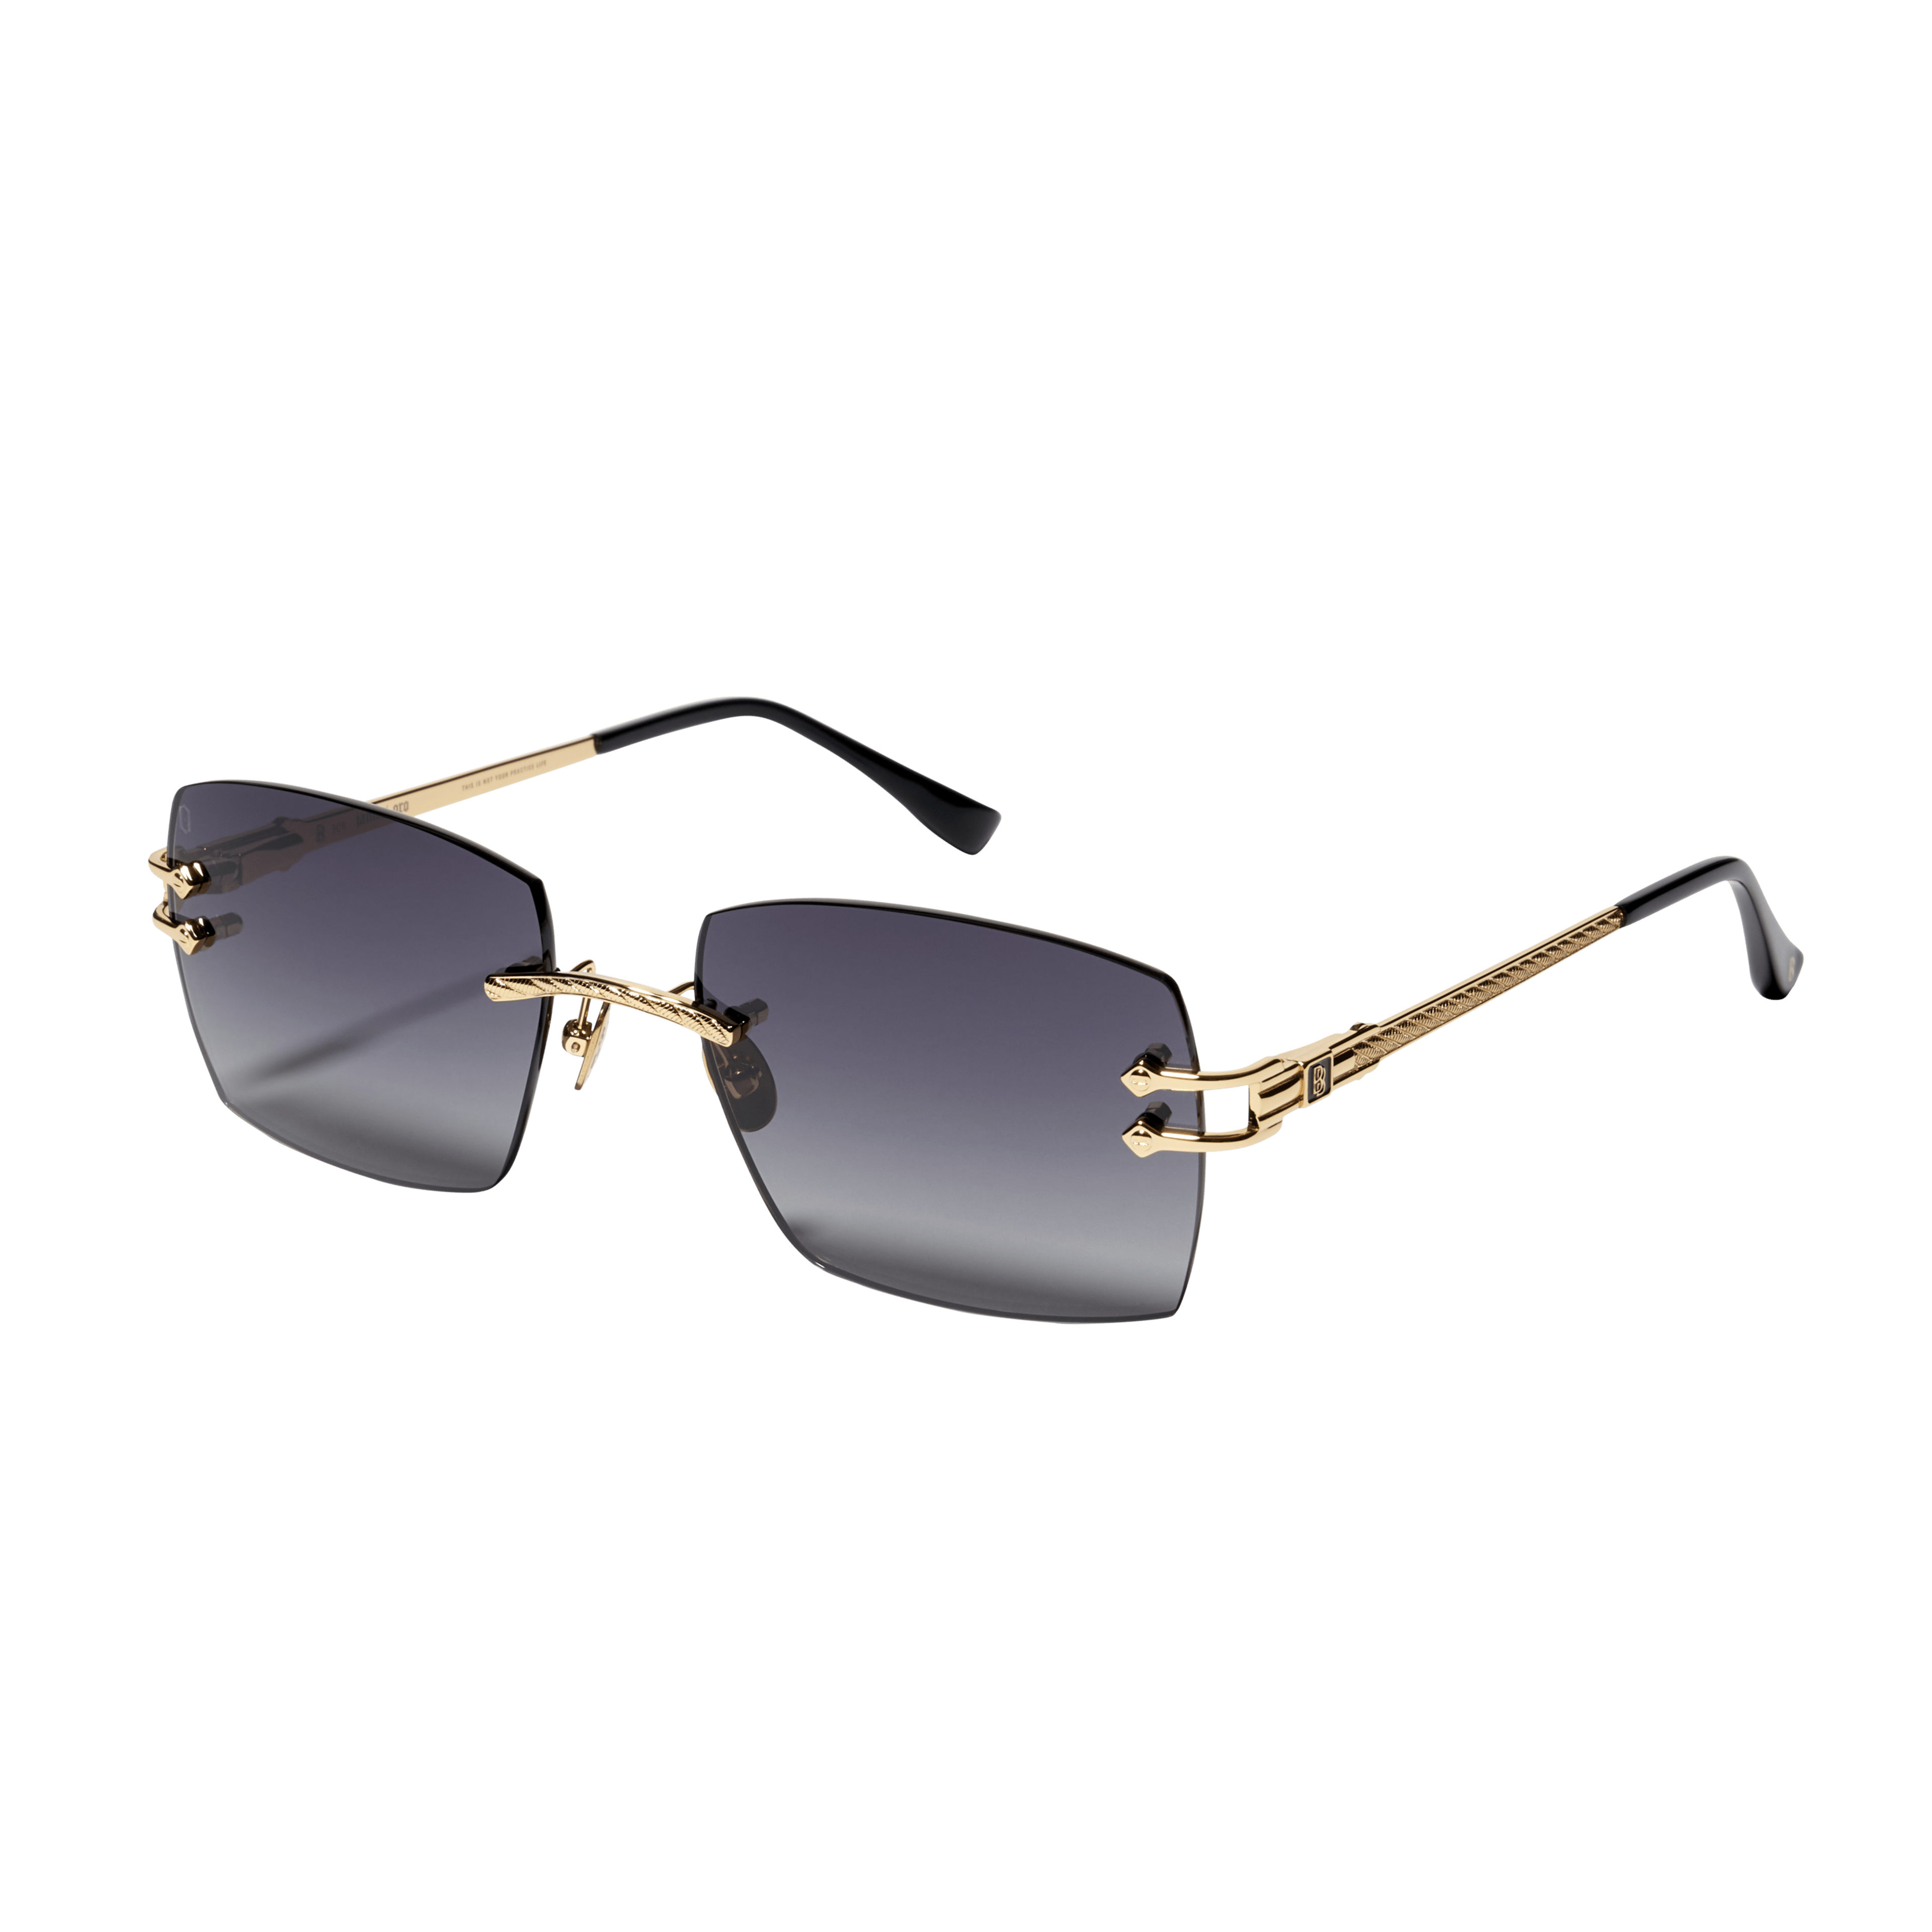 Alternate View 1 of Ben Baller Grail Sunglasses in Gold/Black